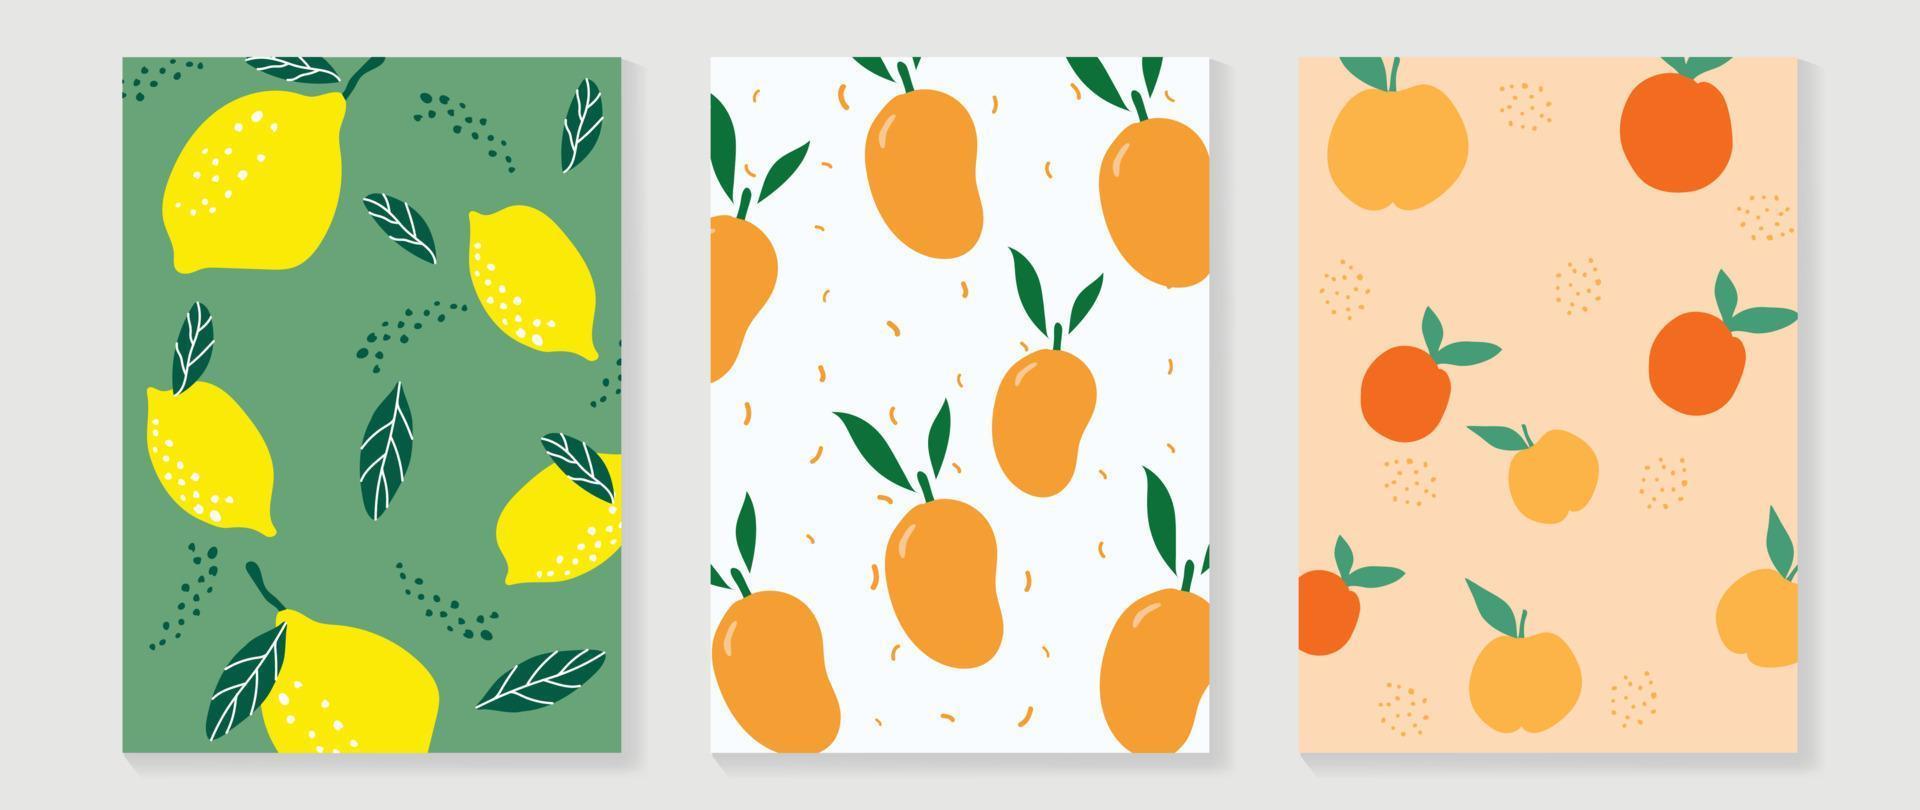 ensemble de vecteurs d'arrière-plan d'art mural de fruits frais. dessin minimal de fruits tropicaux d'orange, de mangue et de citron avec une texture de points. conception de saison de printemps et d'été pour la décoration intérieure, l'intérieur, le papier peint, le tissu. vecteur